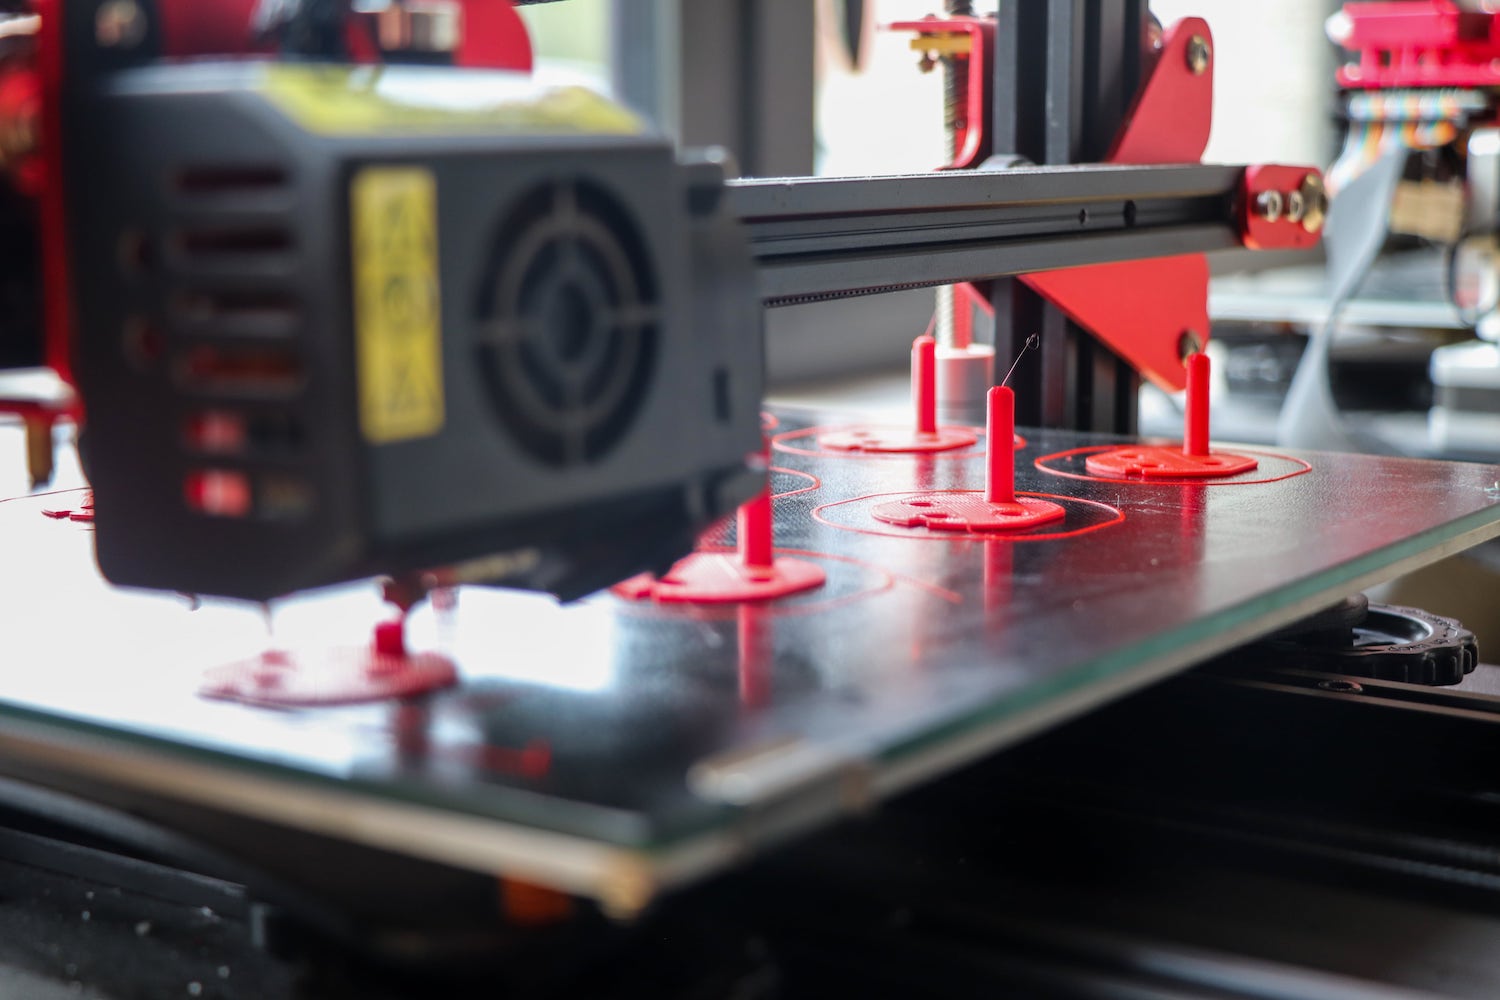 La fabrication additive - imprimante 3D entrain d'imprimer